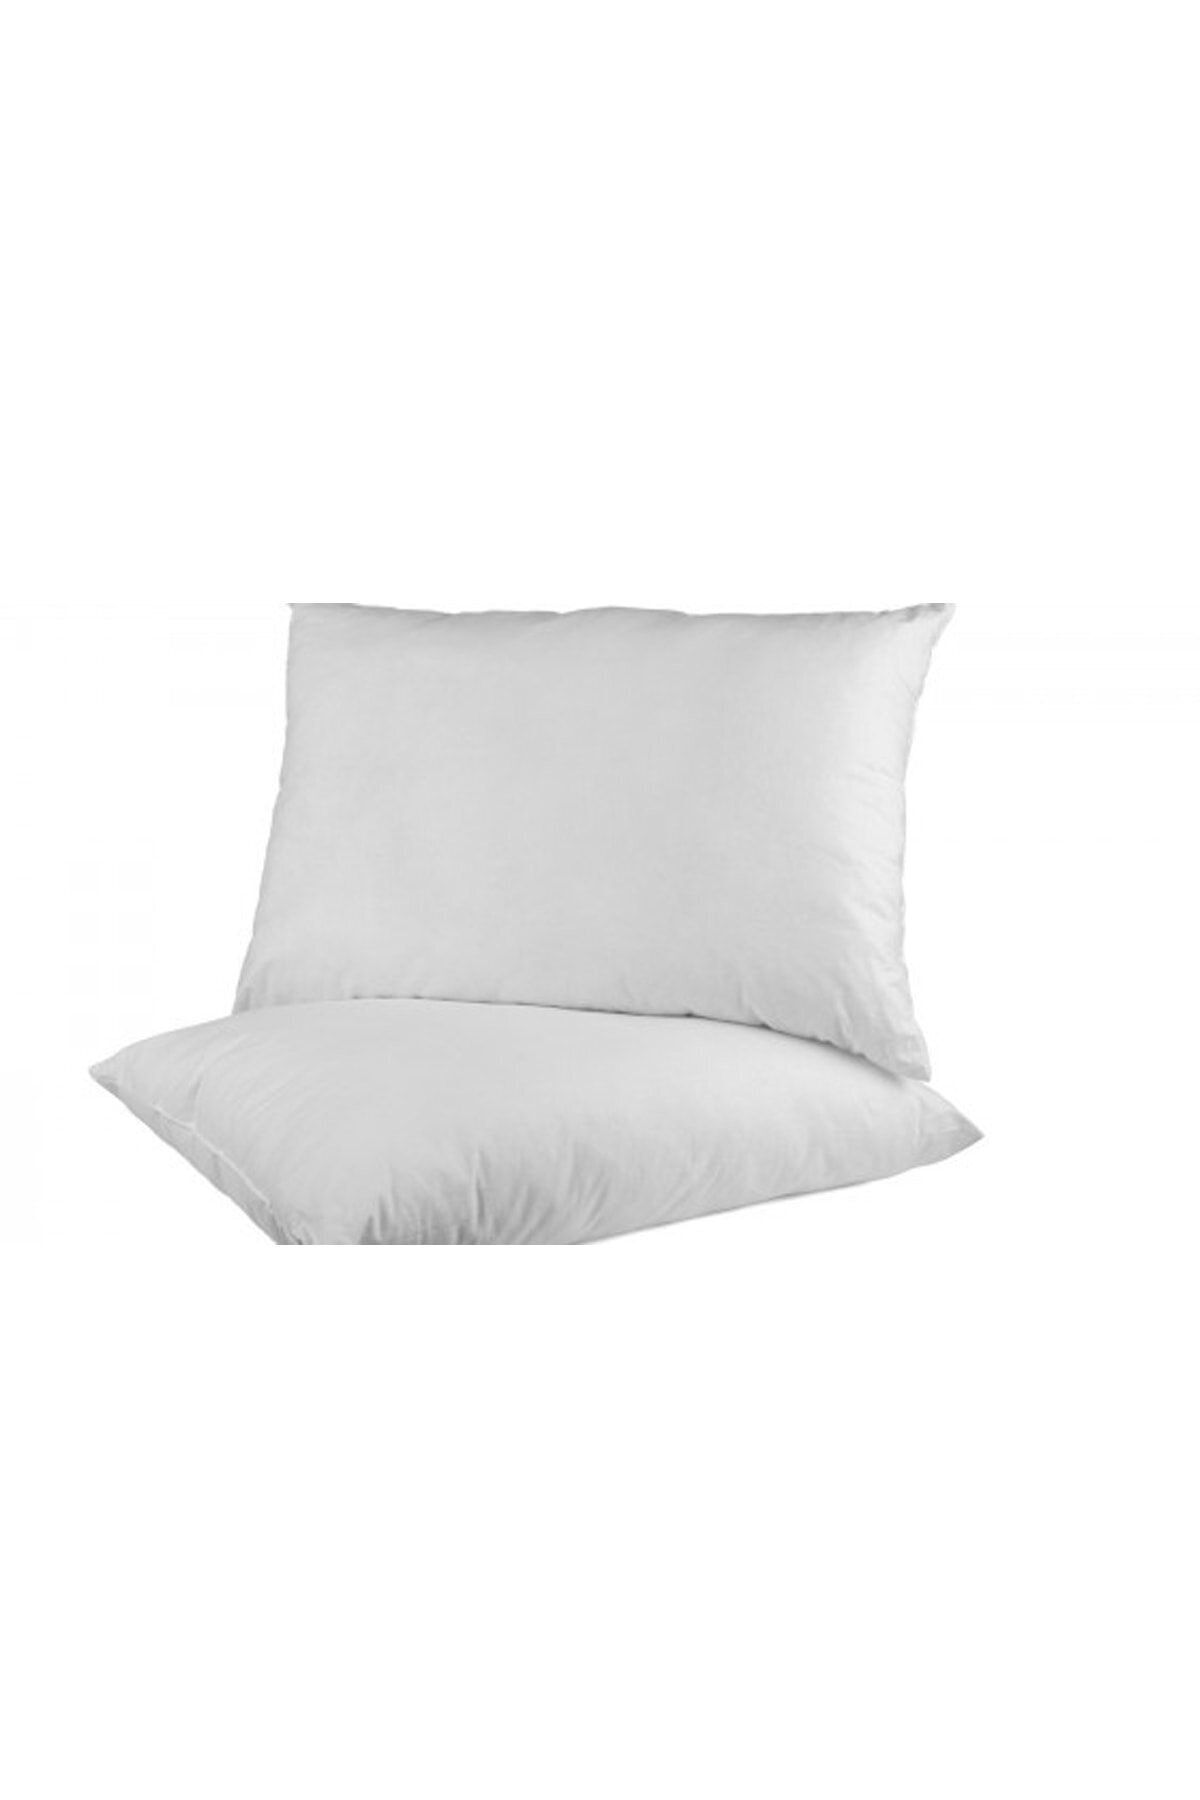 İşbir Yatak Antialerjik Silikon Yastık Beyaz 50x70